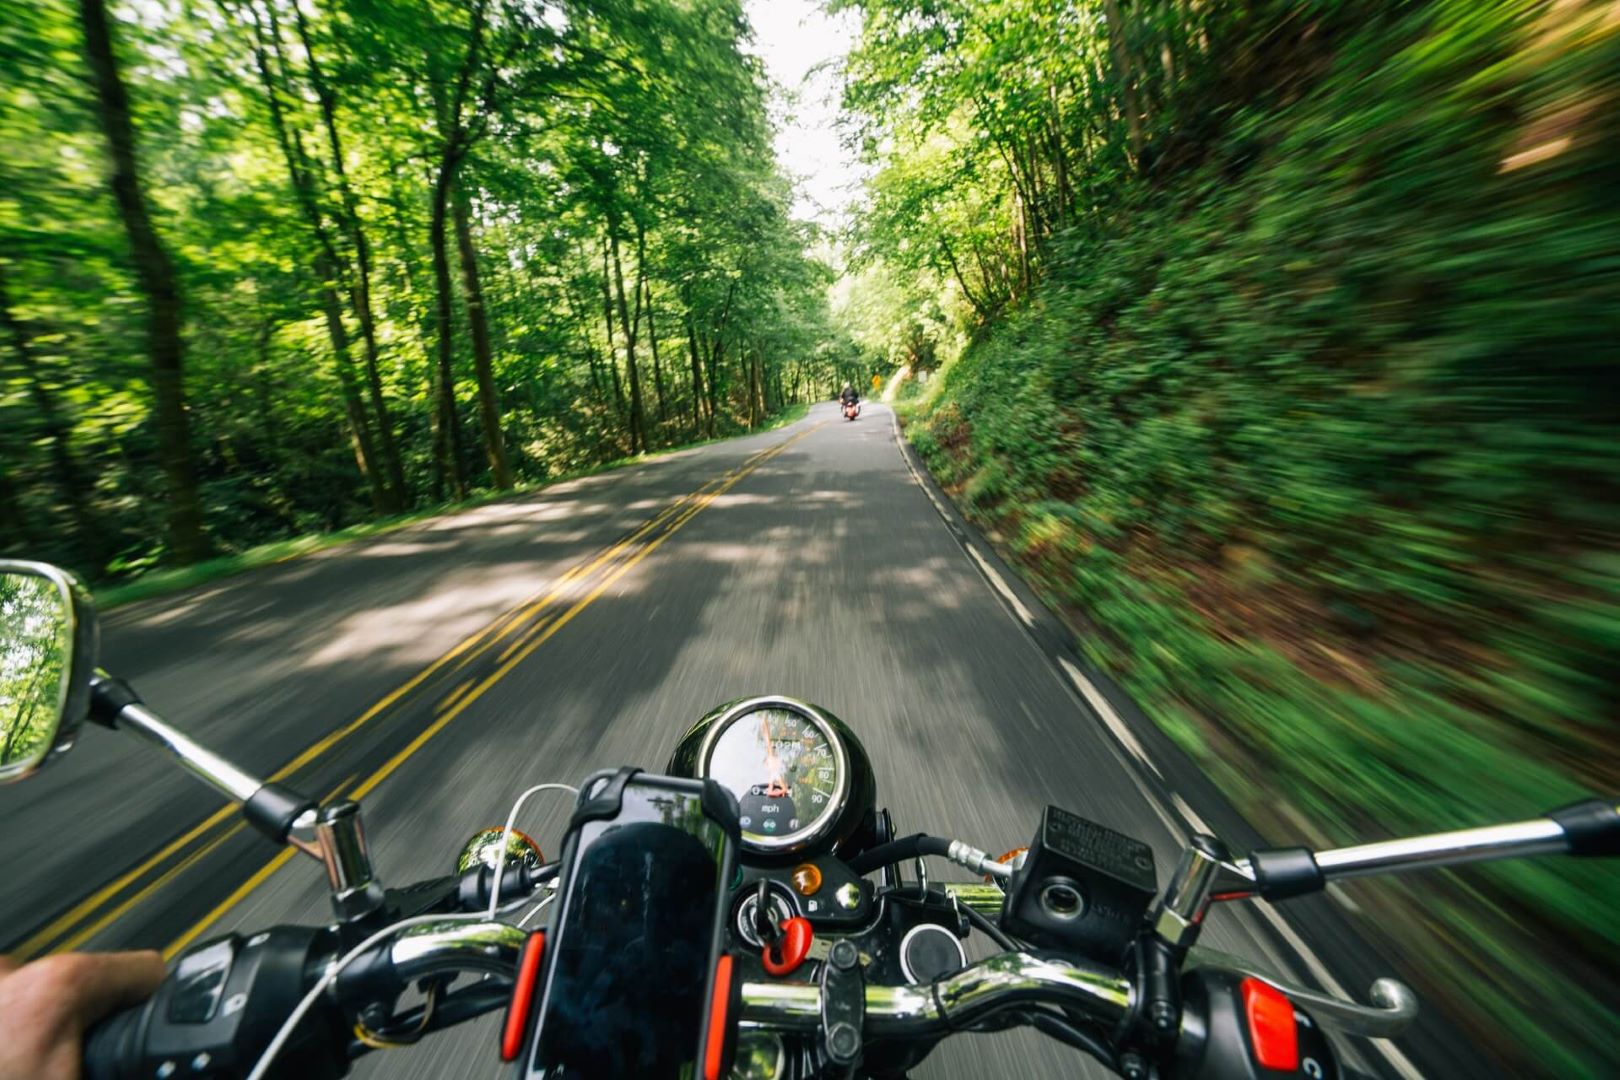 Prvý pohľad z motorky na cestu pri lese